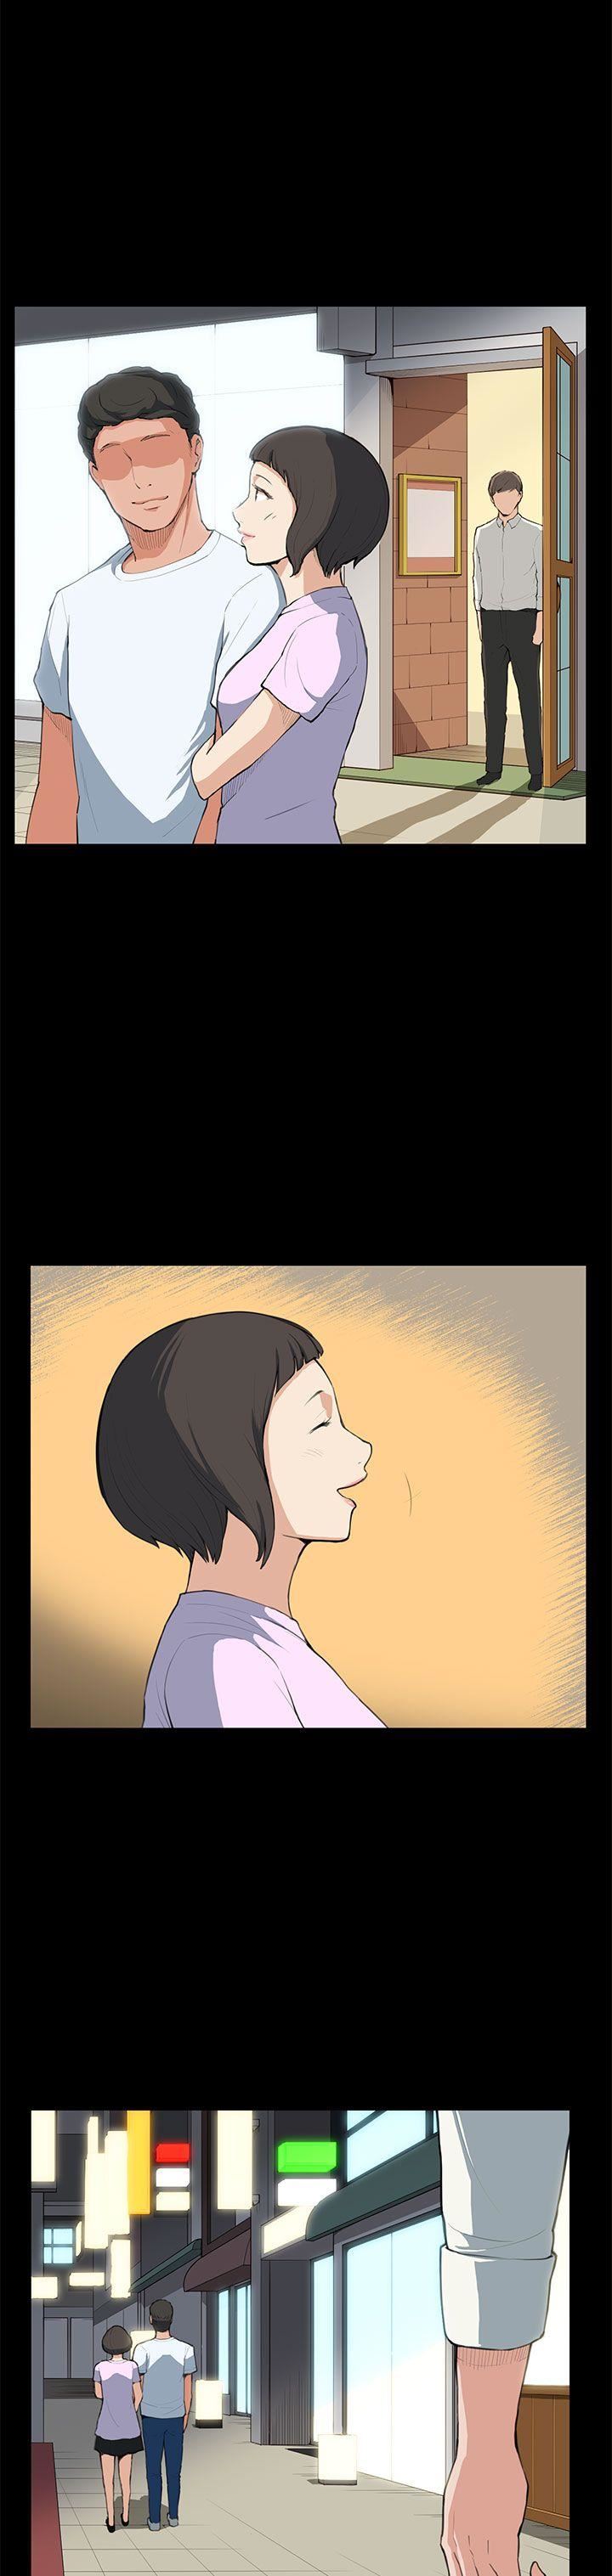 韩国污漫画 斯德哥爾摩癥候群 第7话 23